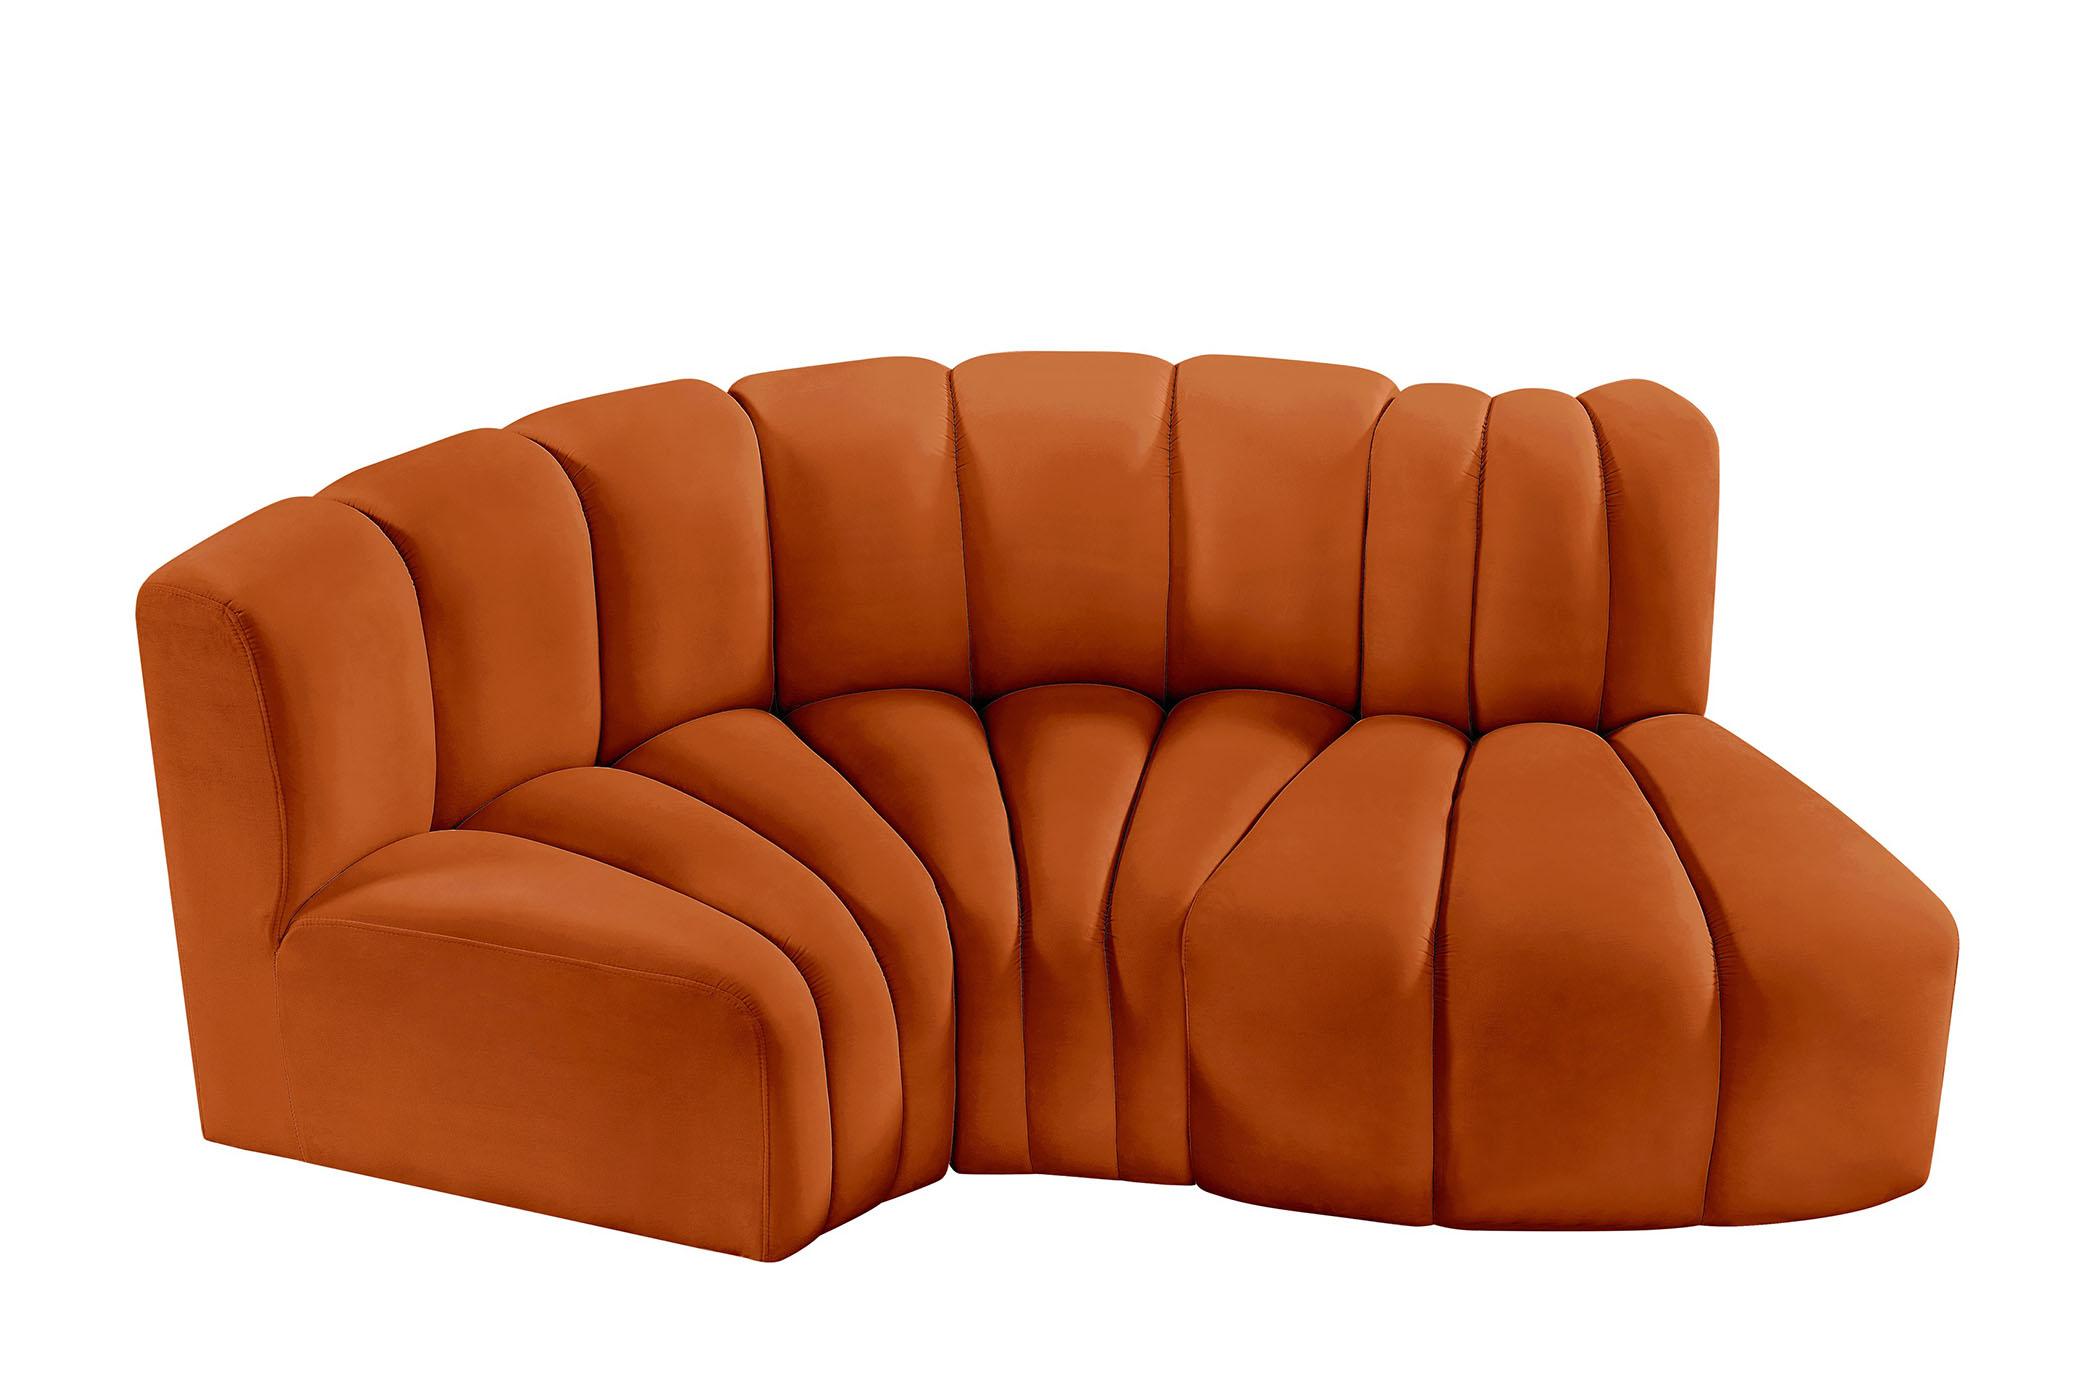 Contemporary, Modern Modular Sectional Sofa ARC 103Cognac-S3D 103Cognac-S3D in Cognac Velvet